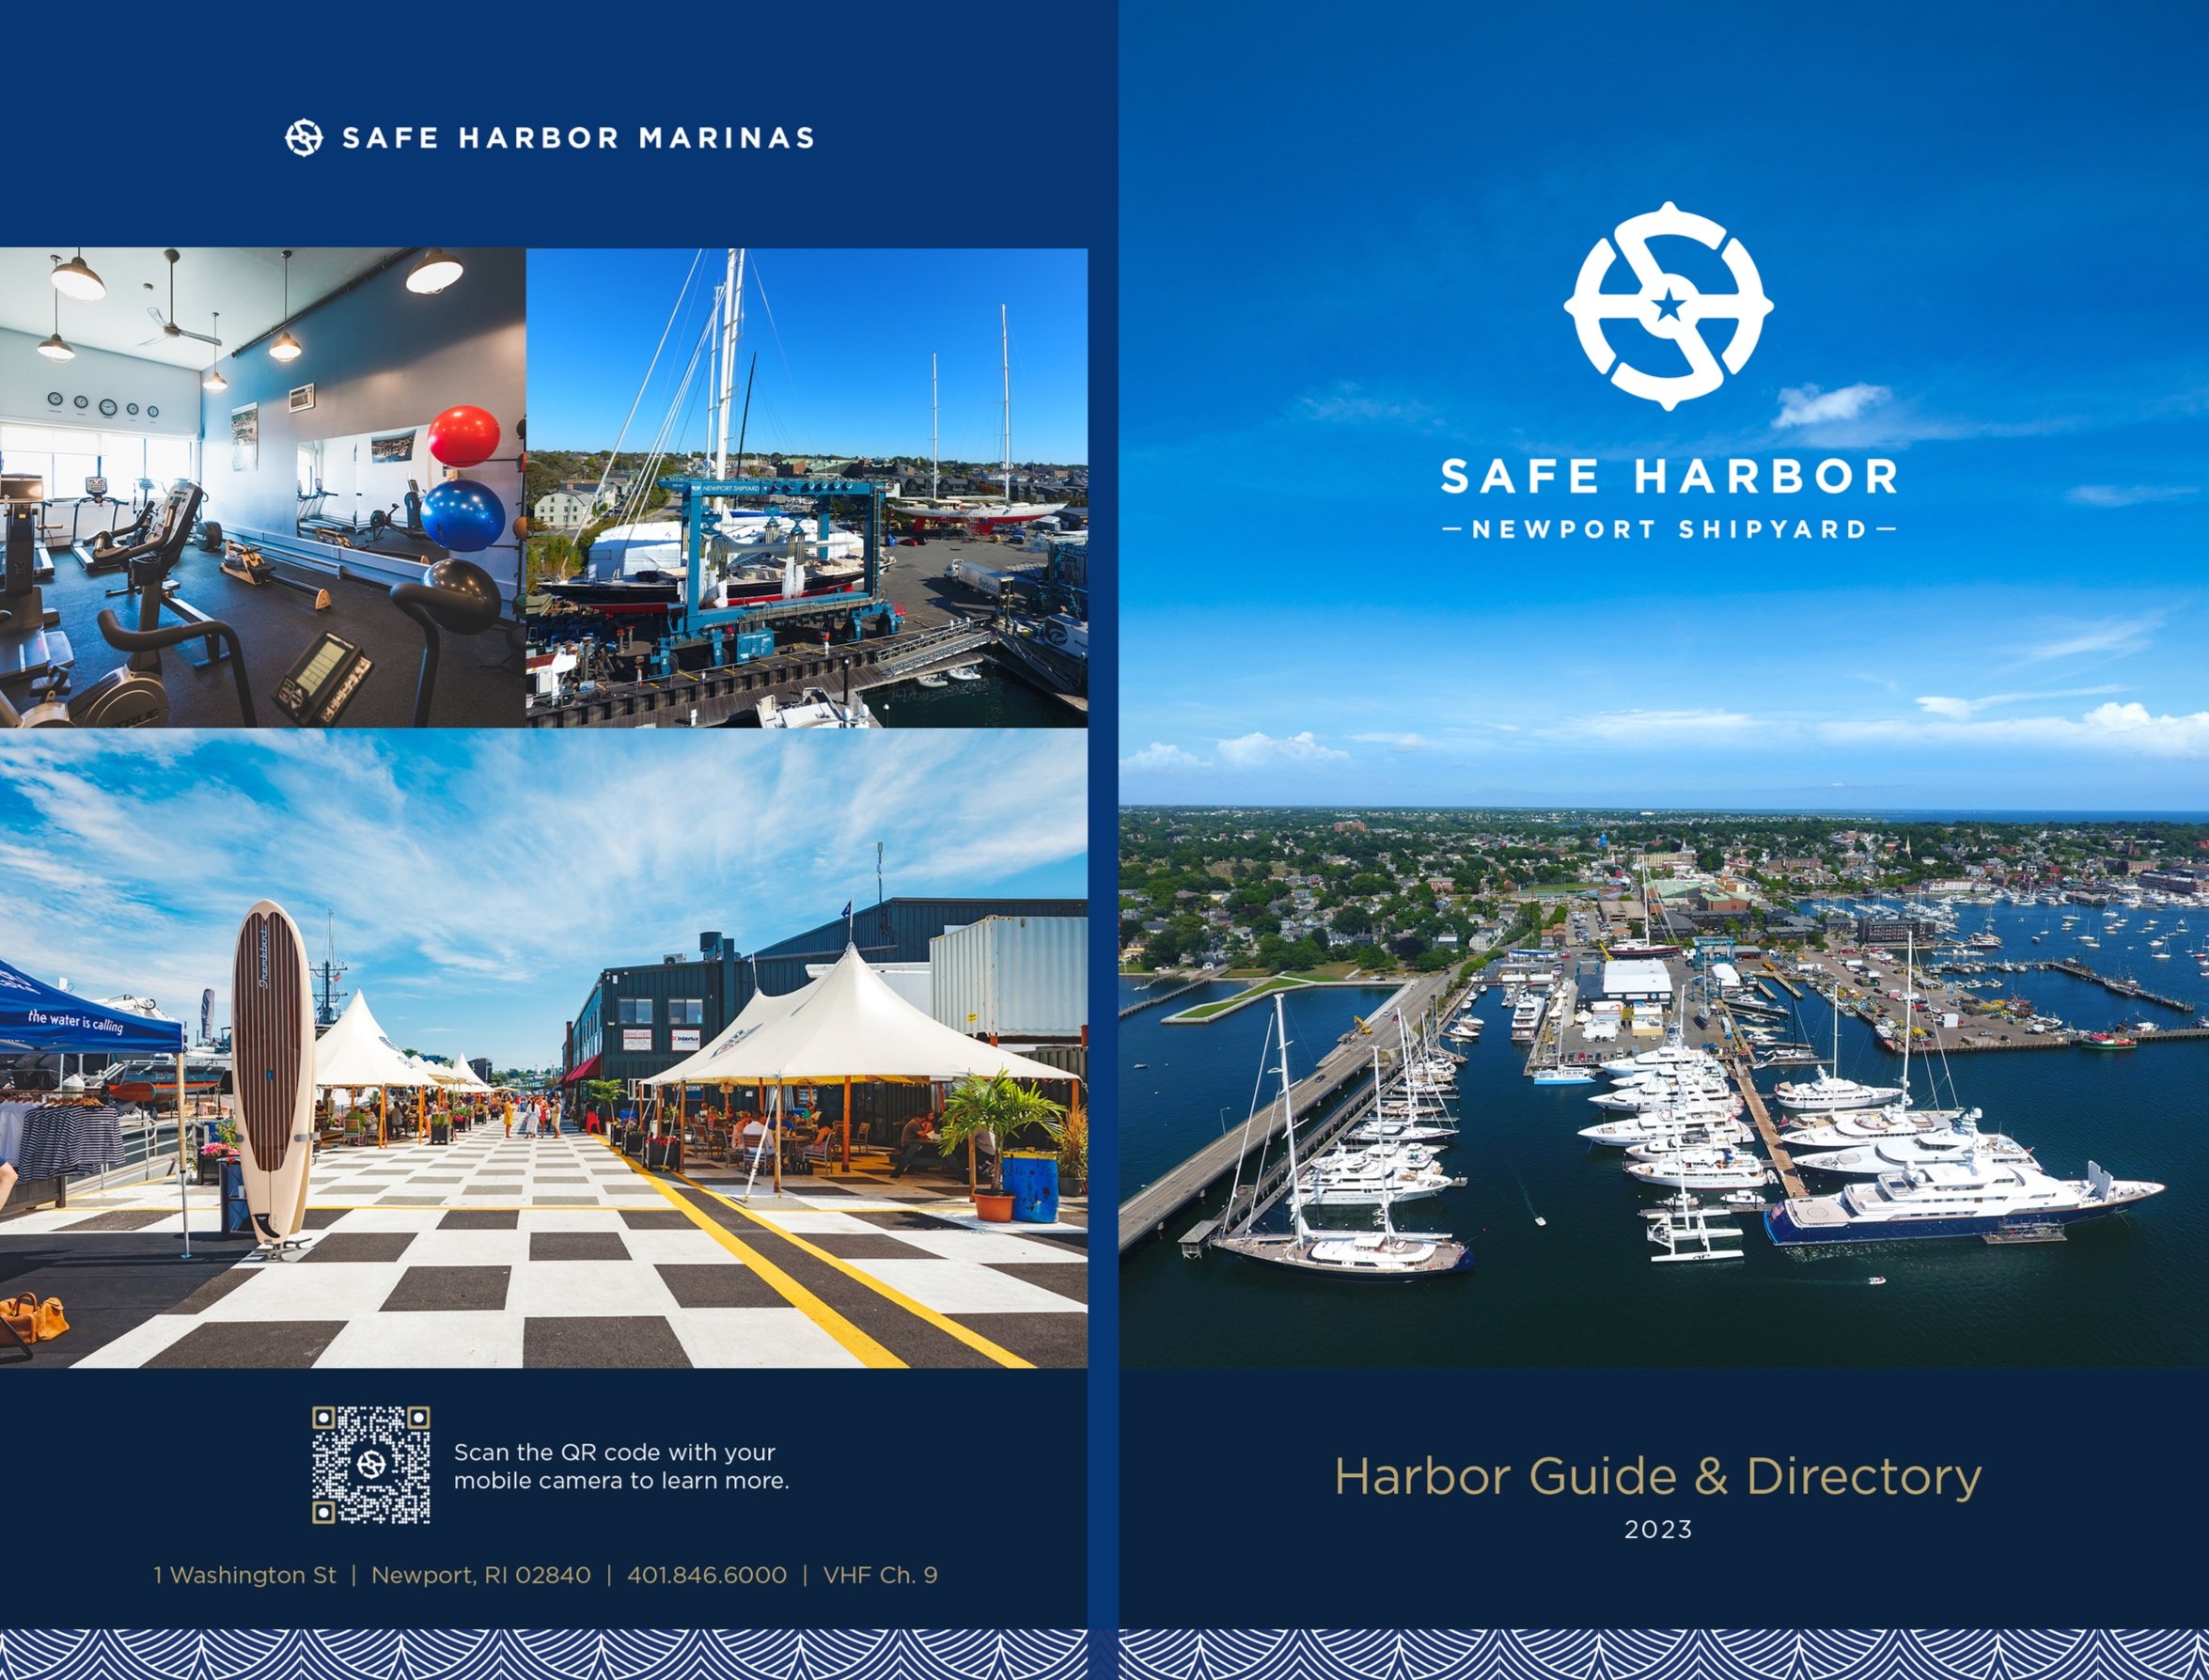 shm-nsy-harbor-guide-cover-2023-revised-vb+%281%29.jpg